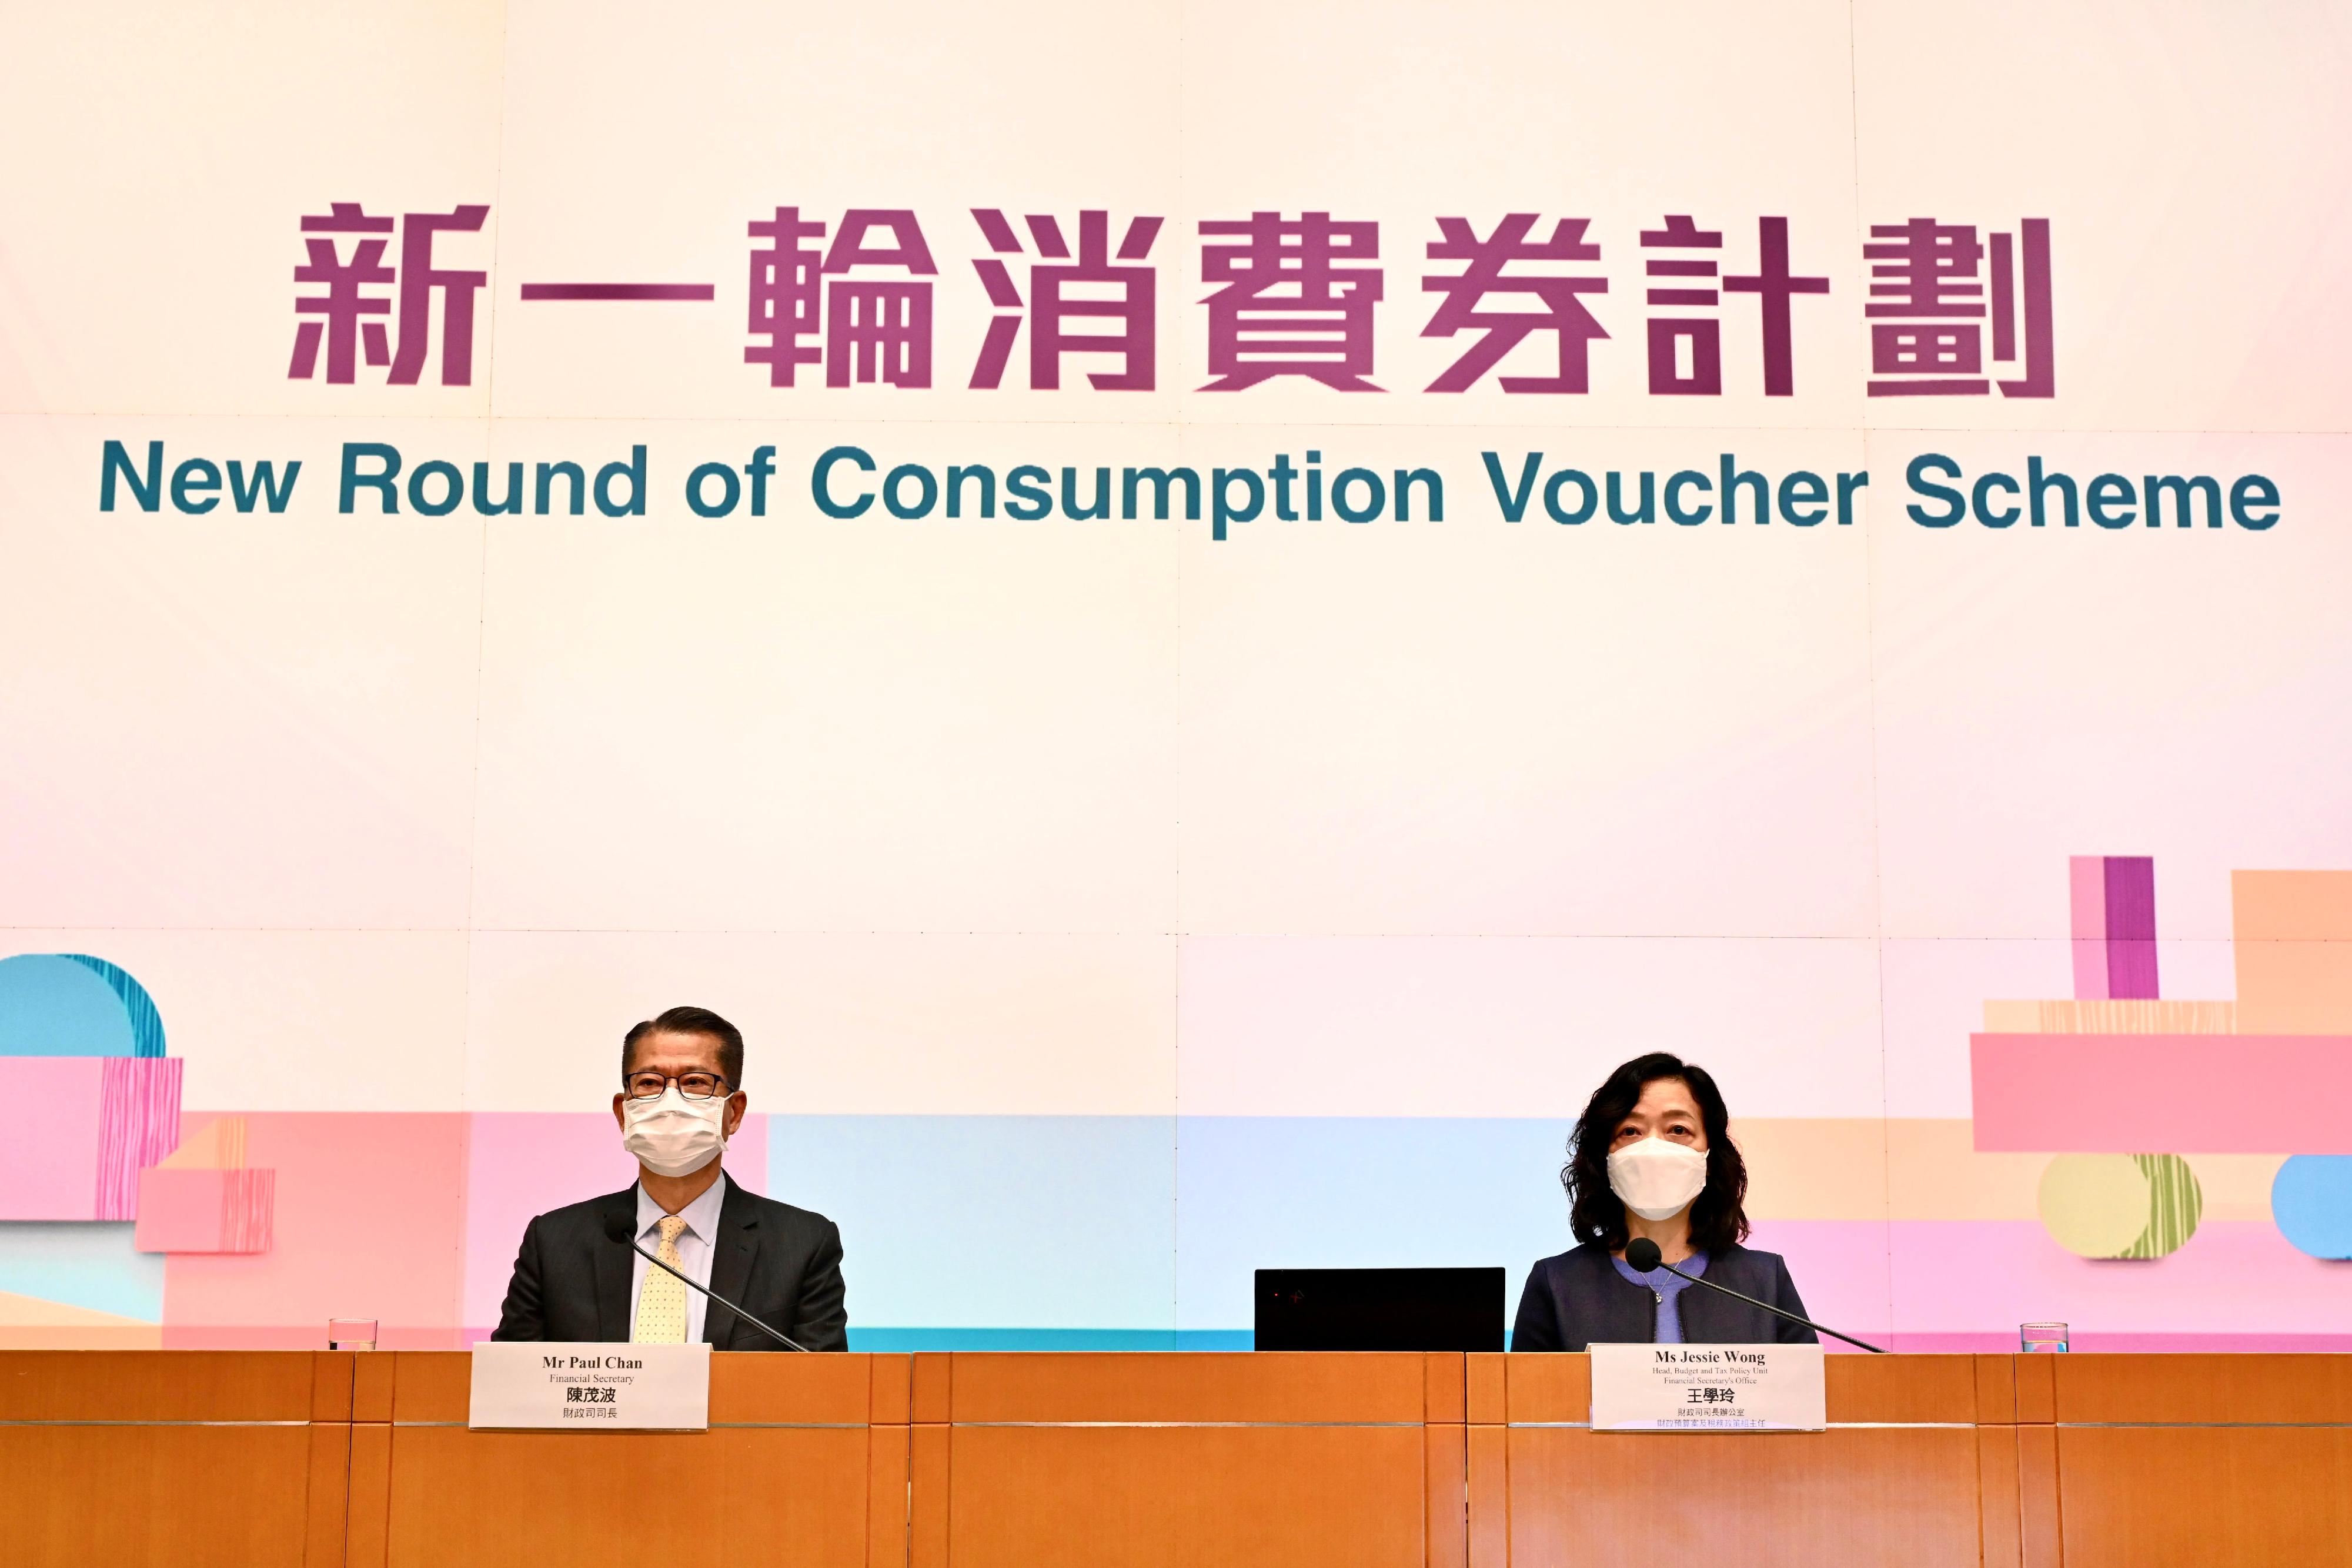 財政司司長陳茂波（左）今日（三月七日）舉行記者會公布新一輪消費券計劃第一階段的詳情。財政司司長辦公室財政預算案及稅務政策組主任王學玲（右）亦有出席。